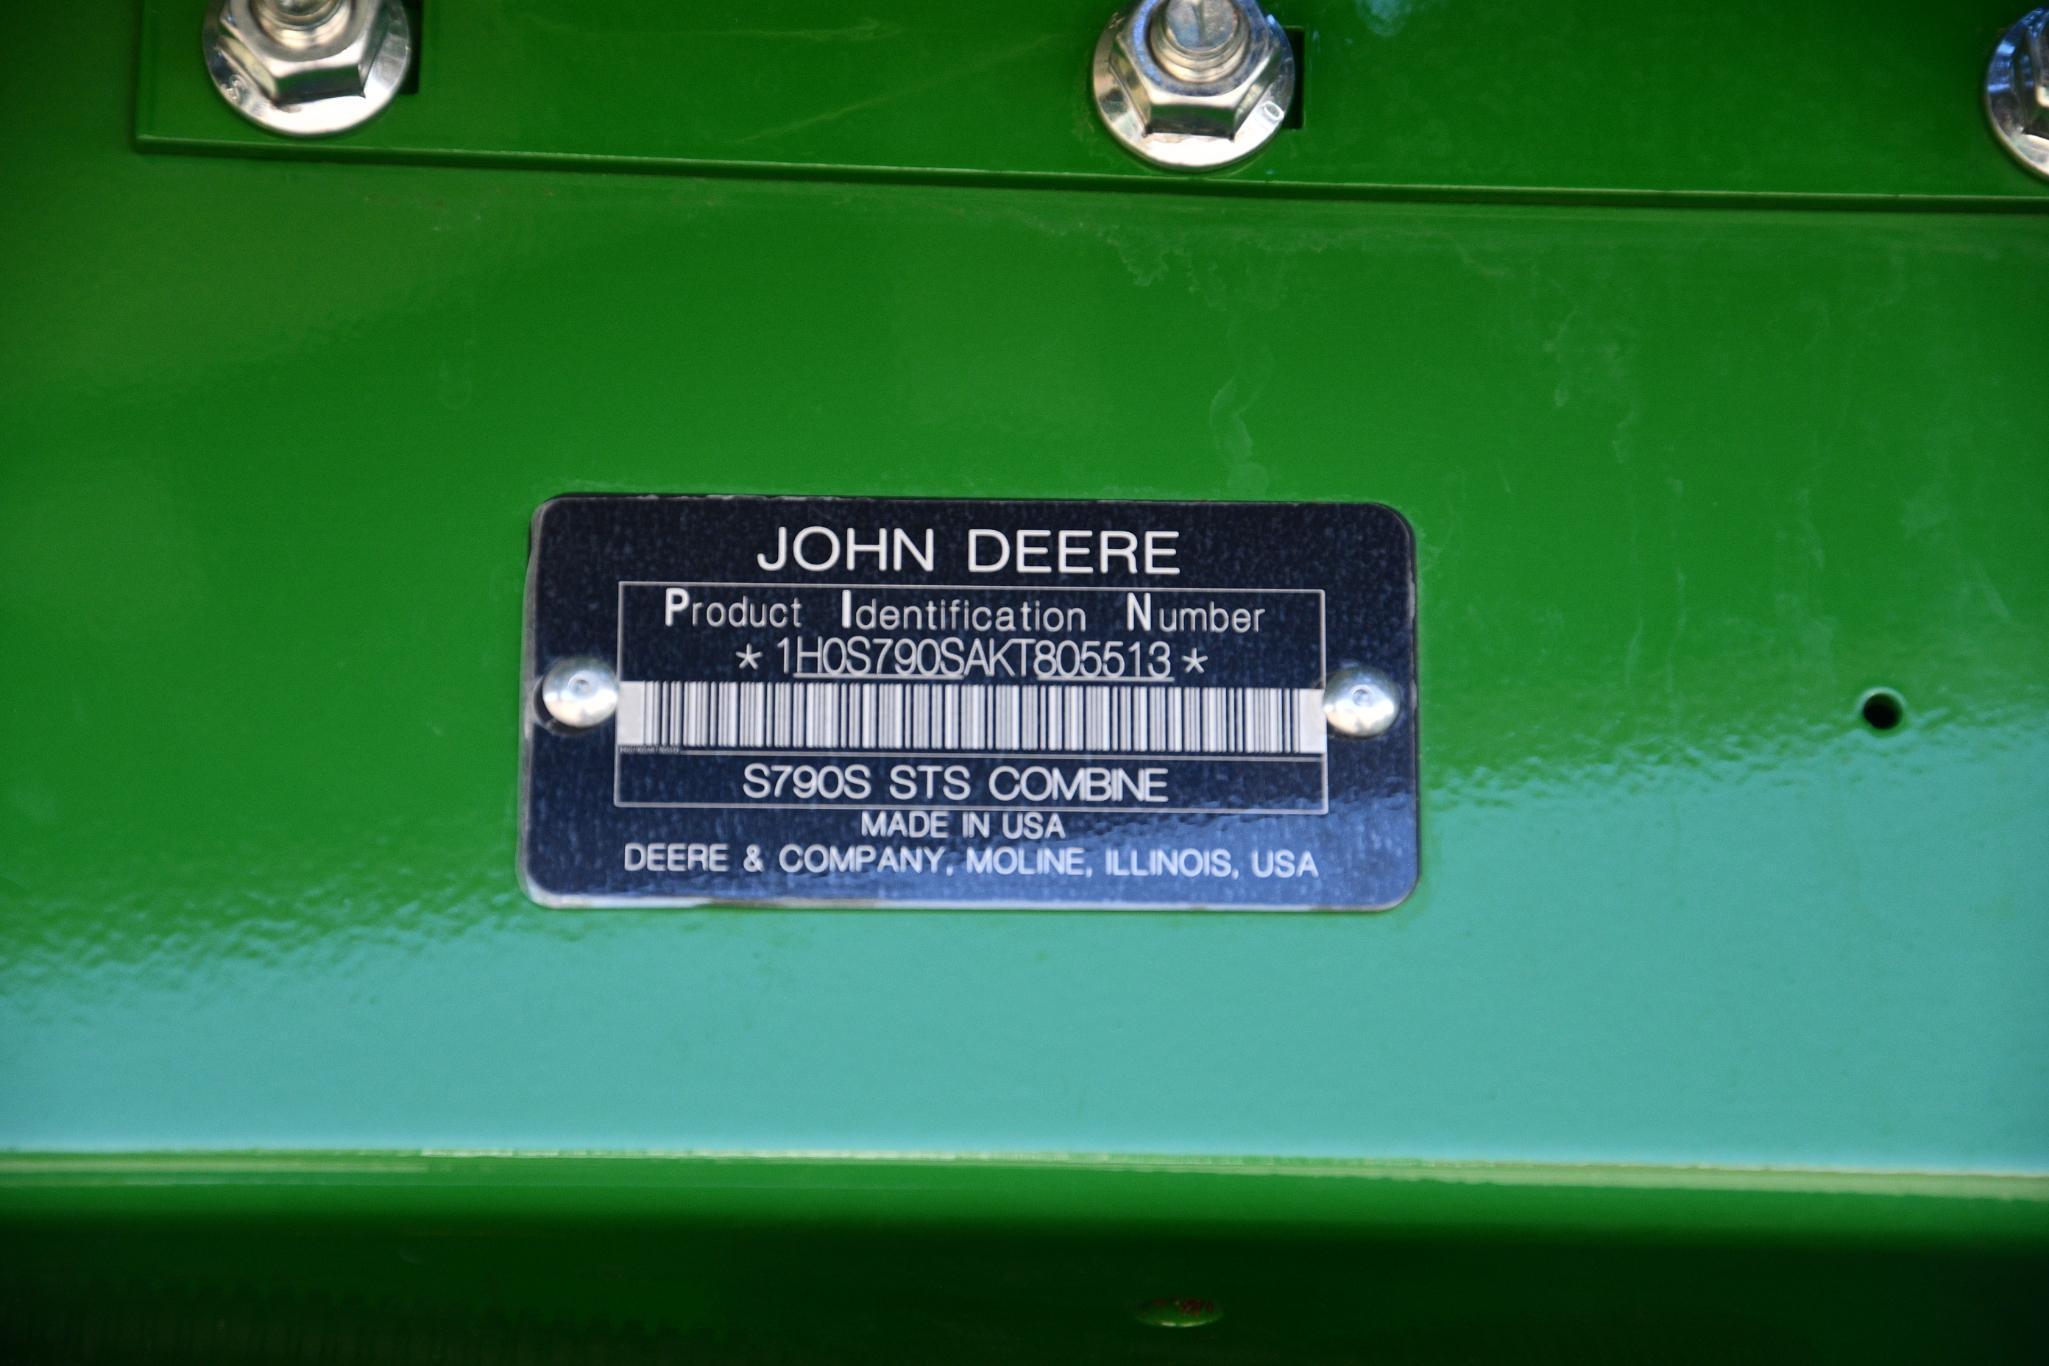 2019 John Deere S790 4wd combine